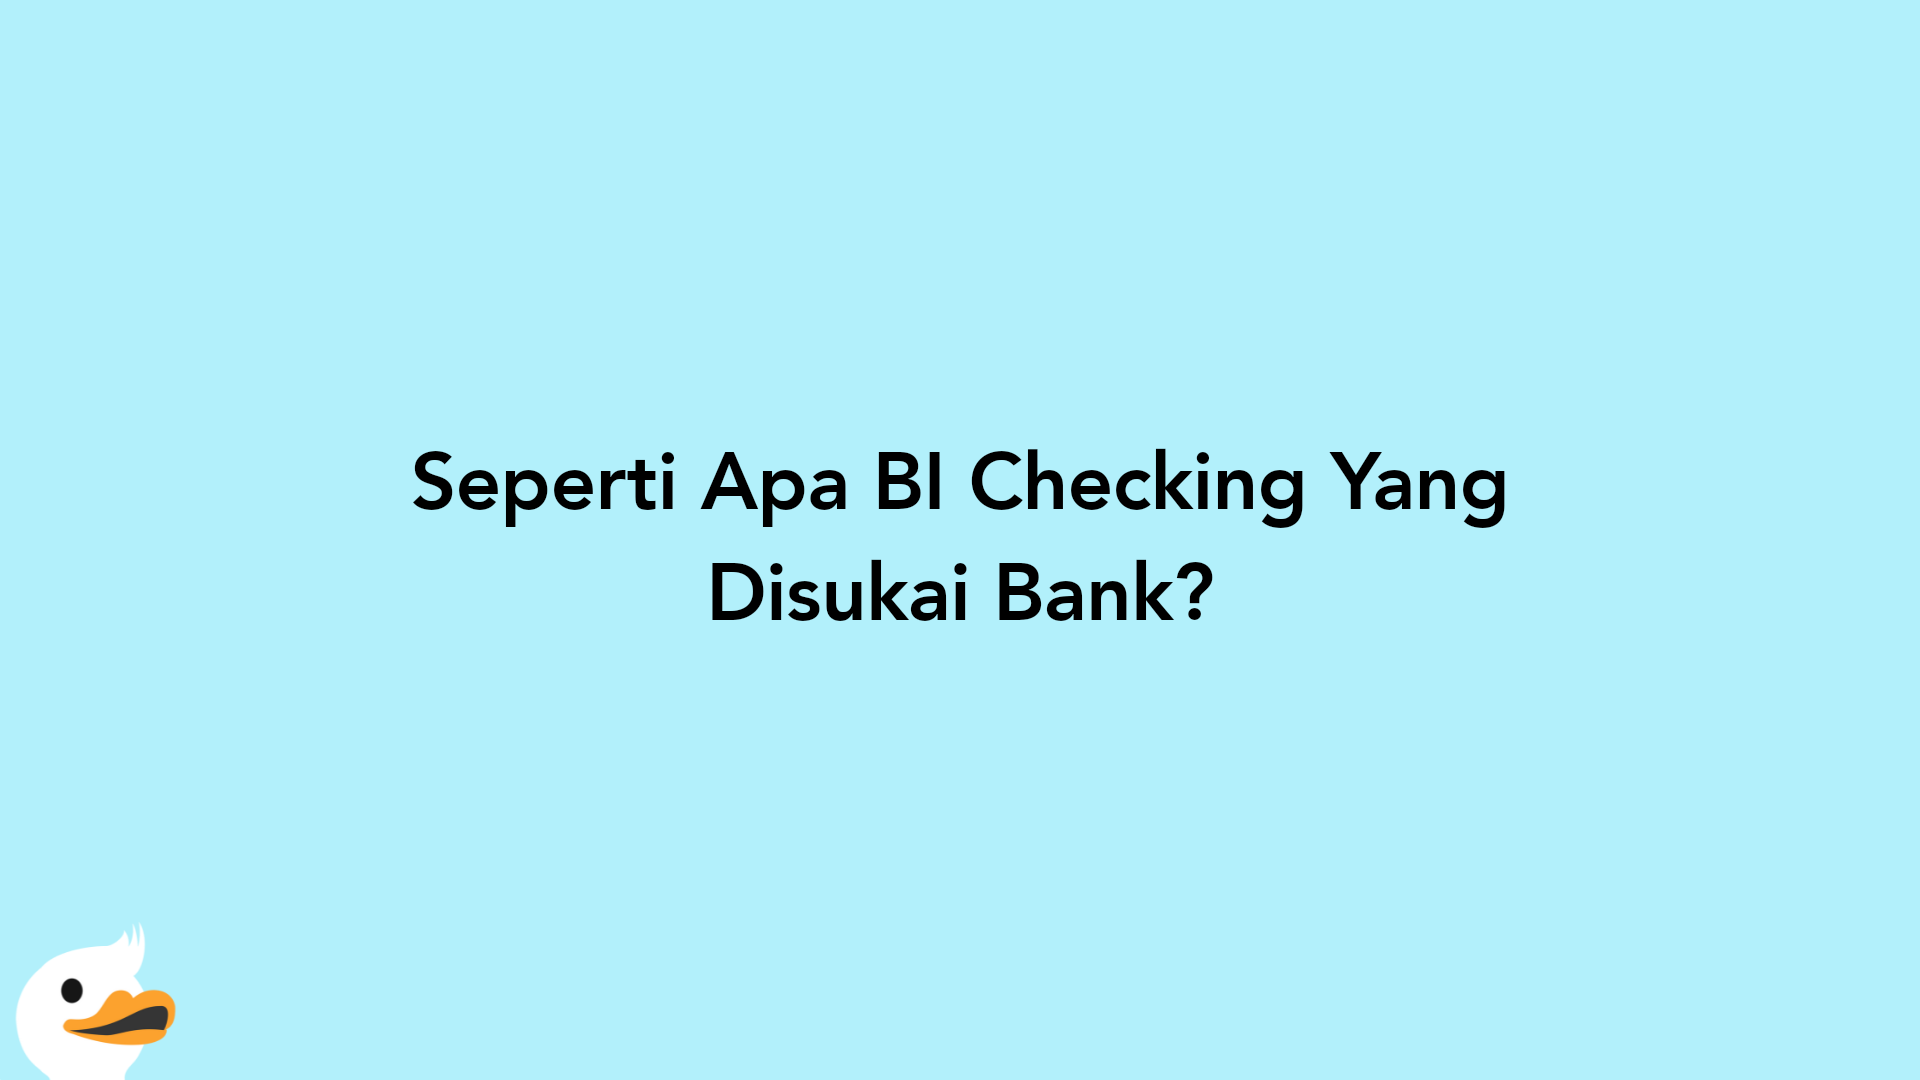 Seperti Apa BI Checking Yang Disukai Bank?